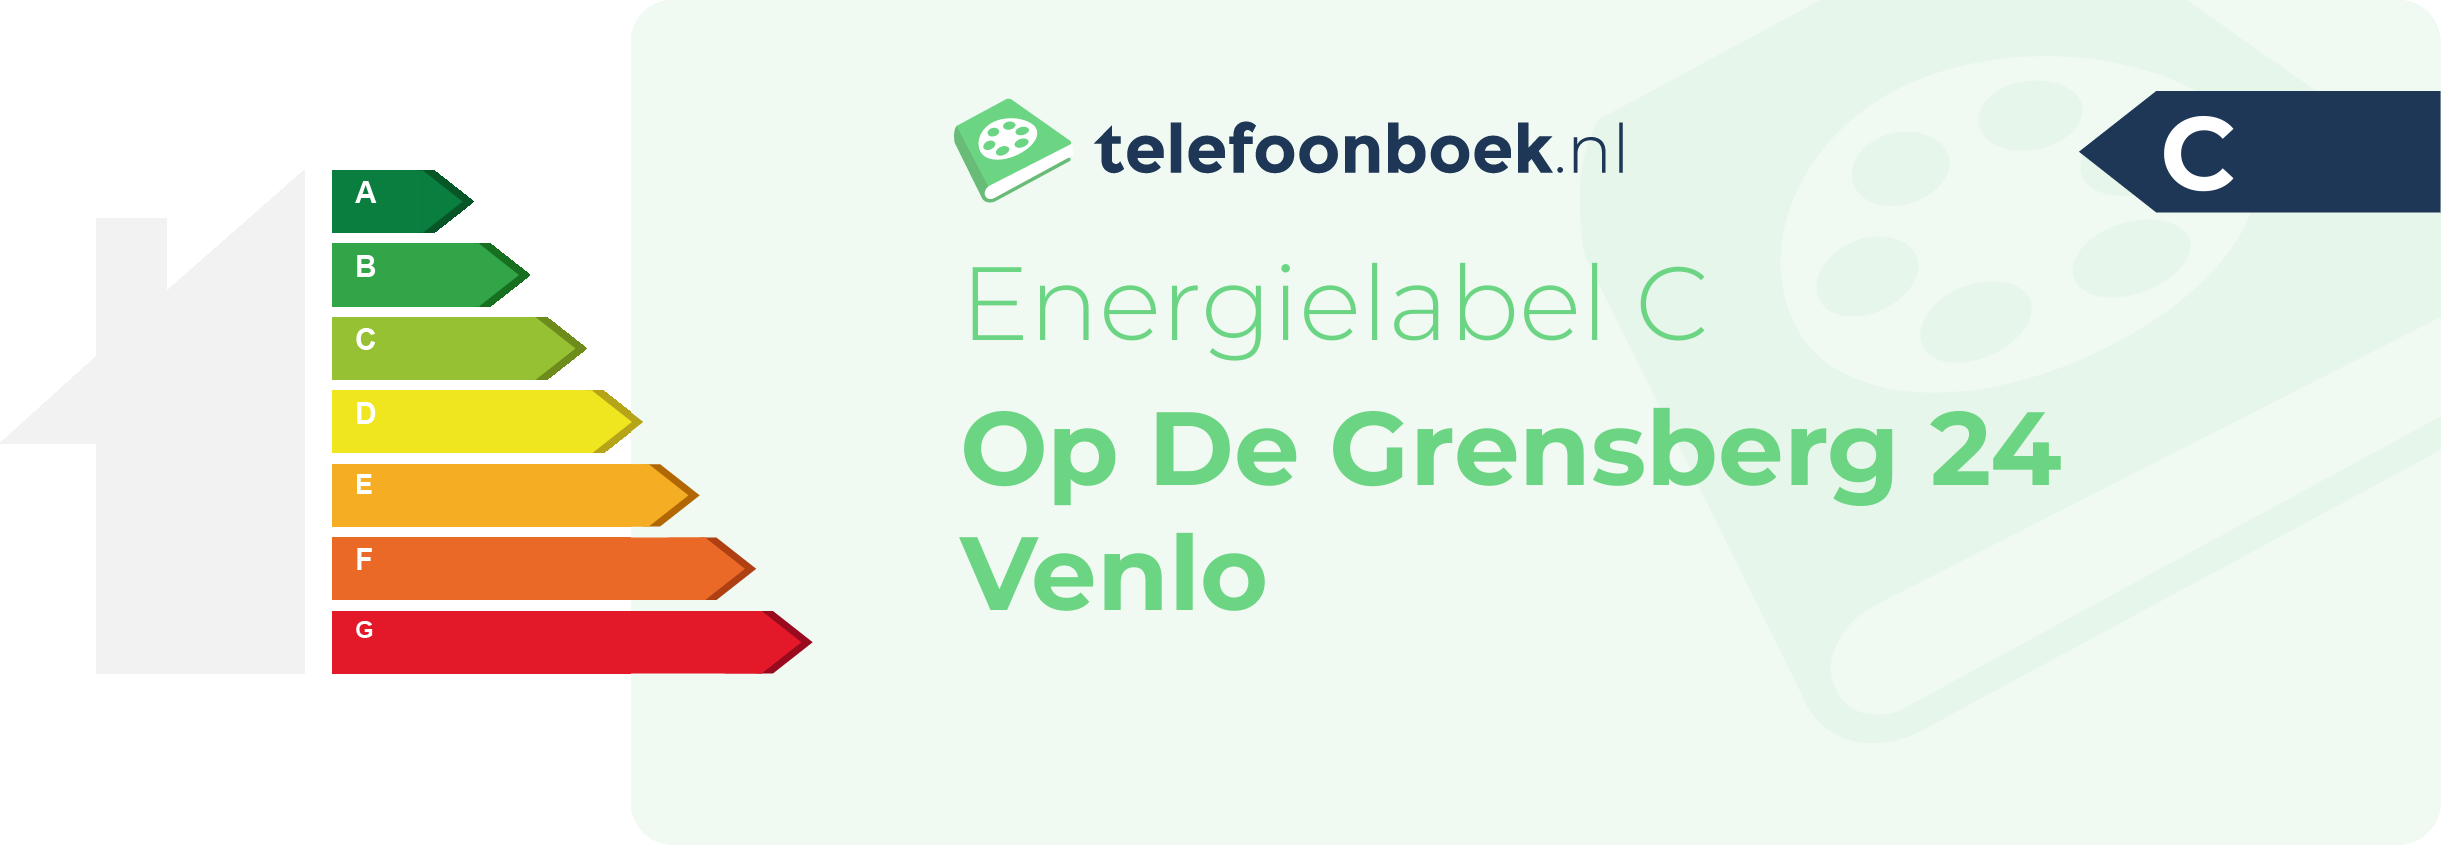 Energielabel Op De Grensberg 24 Venlo